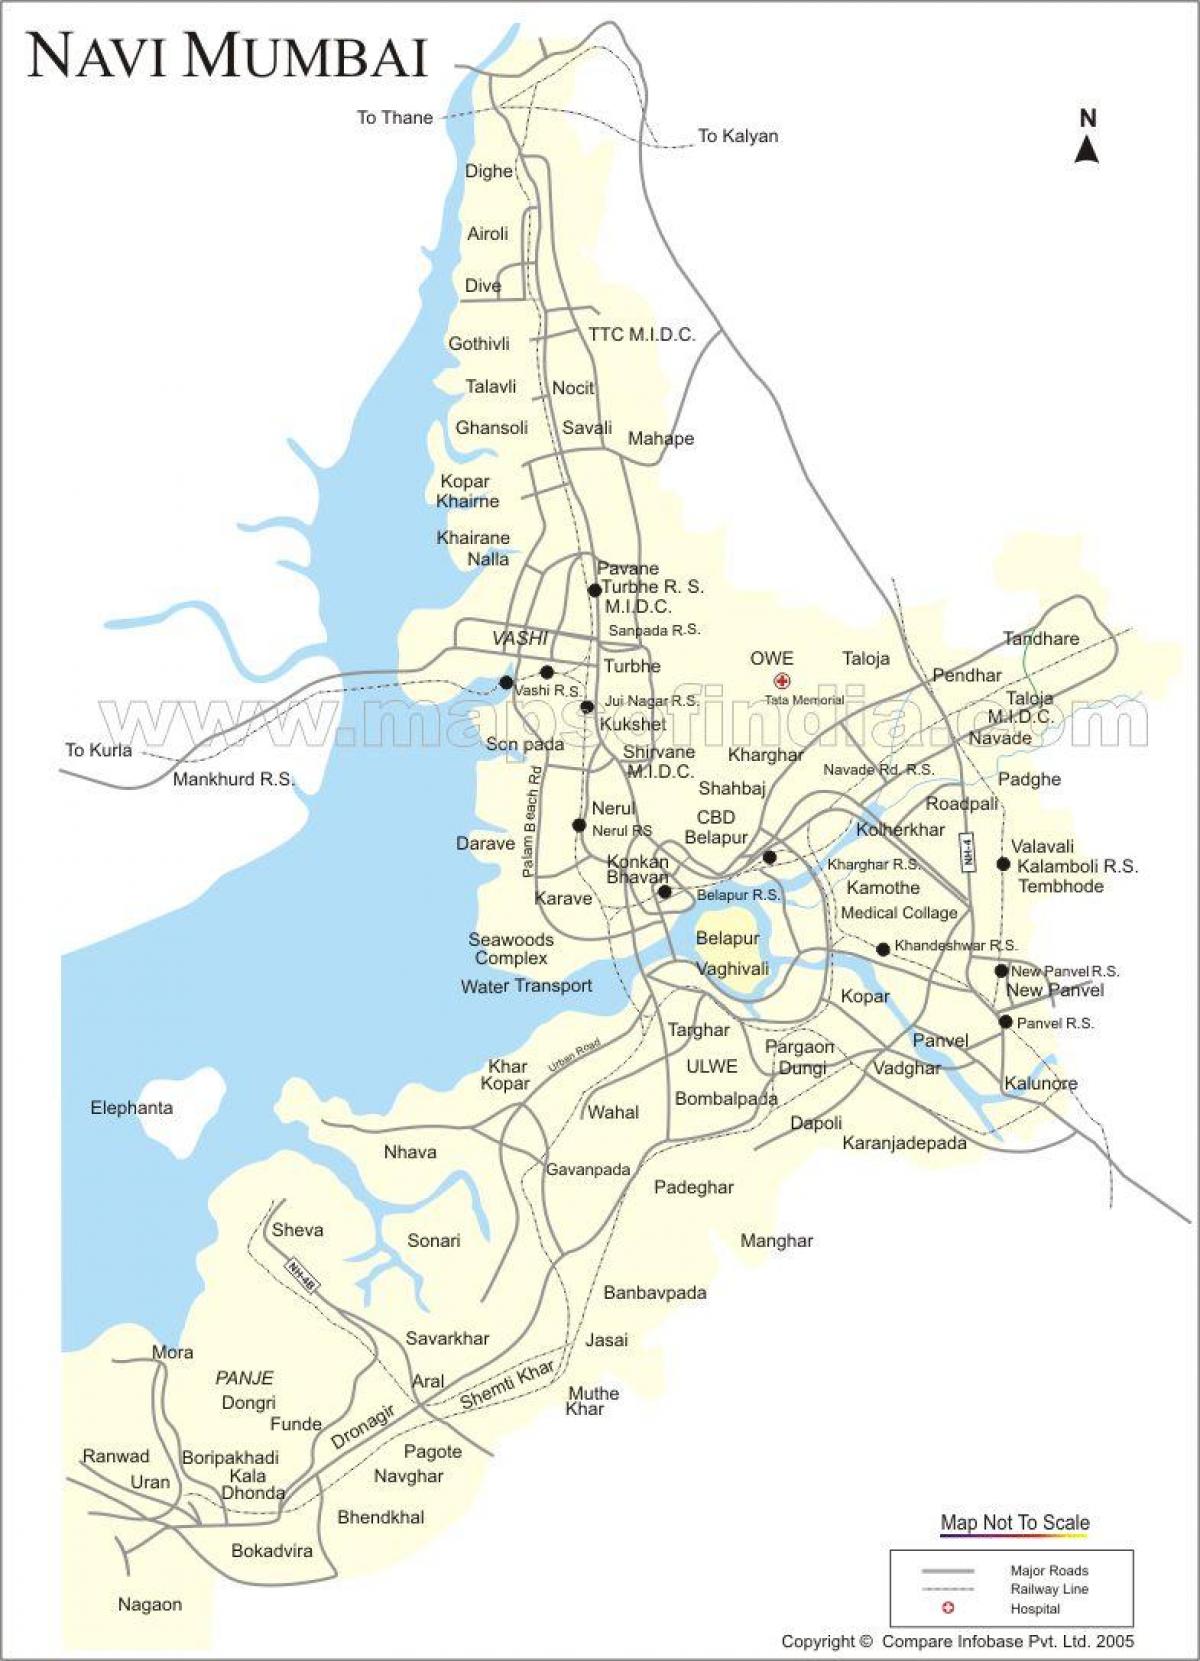 kort over nye Mumbai